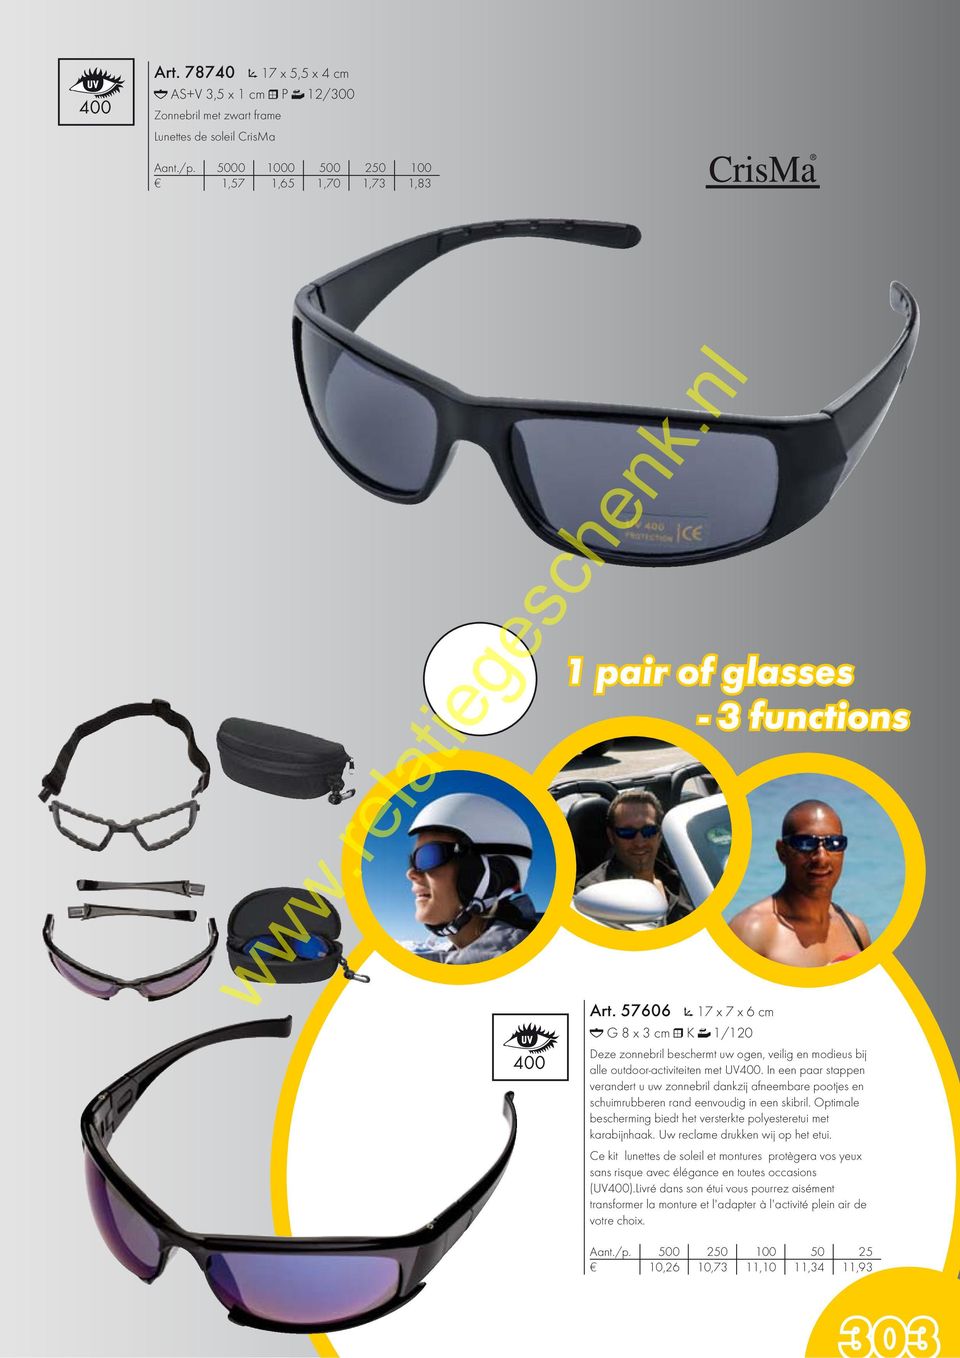 57606 17 x 7 x 6 cm G 8 x 3 cm K 1/120 Deze zonnebril beschermt uw ogen, veilig en modieus bij alle outdoor-activiteiten met UV400.